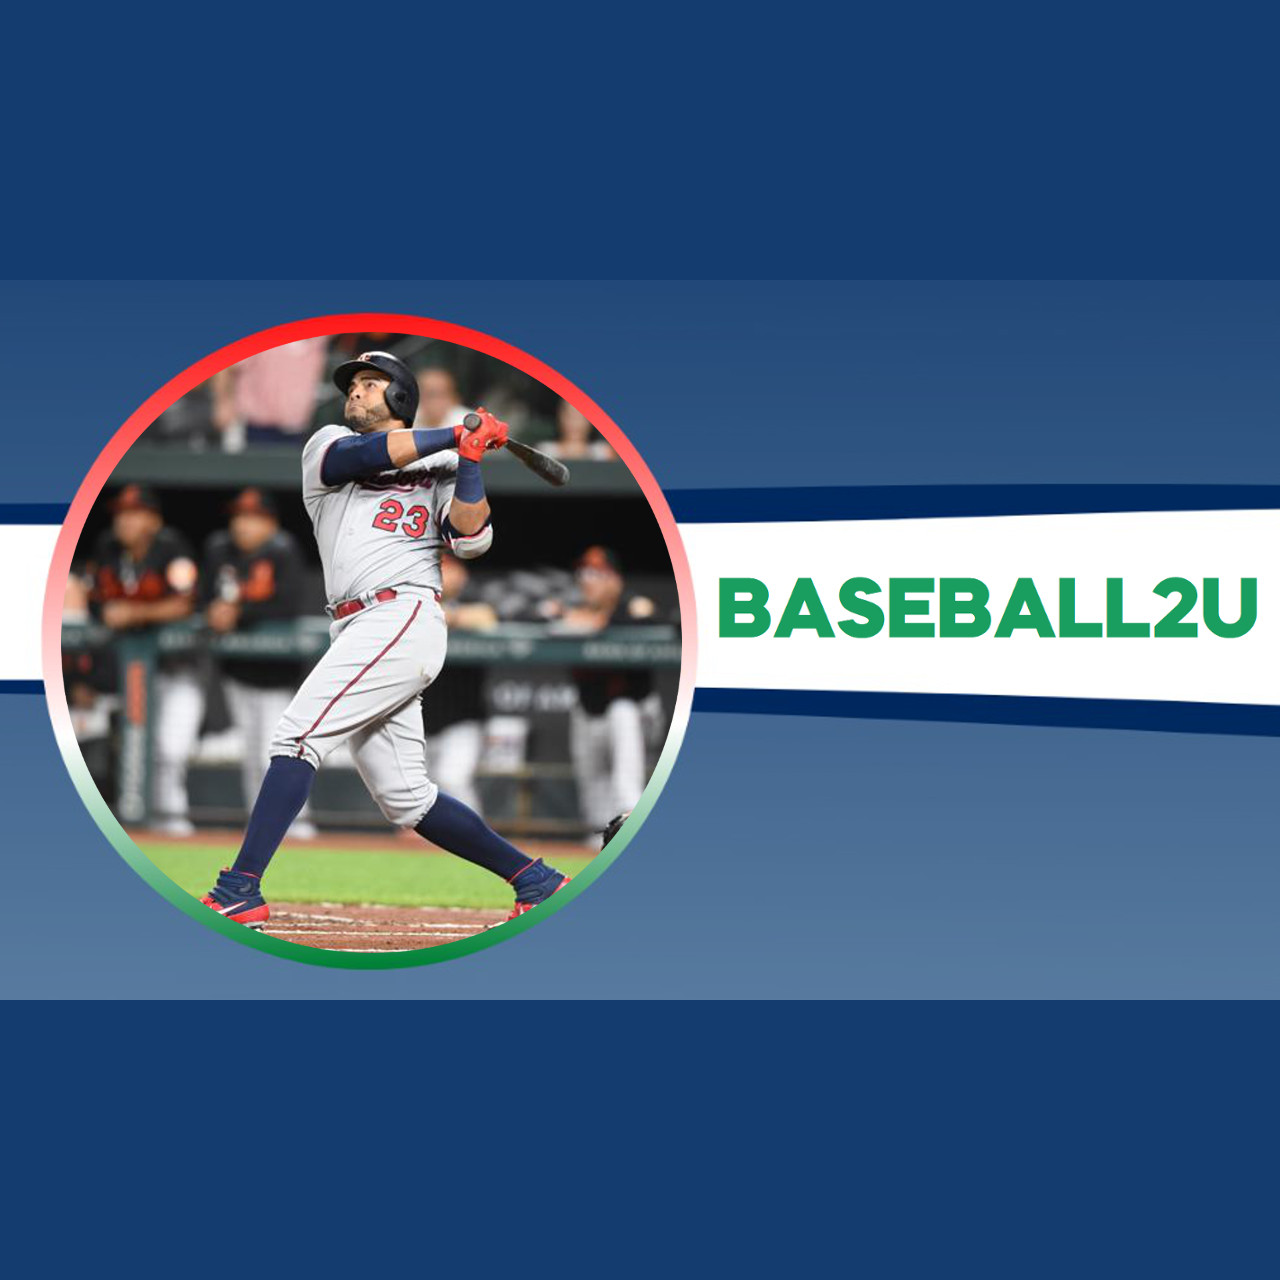 Baseball2u con Matteo Gandini: Telecronista e commentatore Sportitalia e DAZN